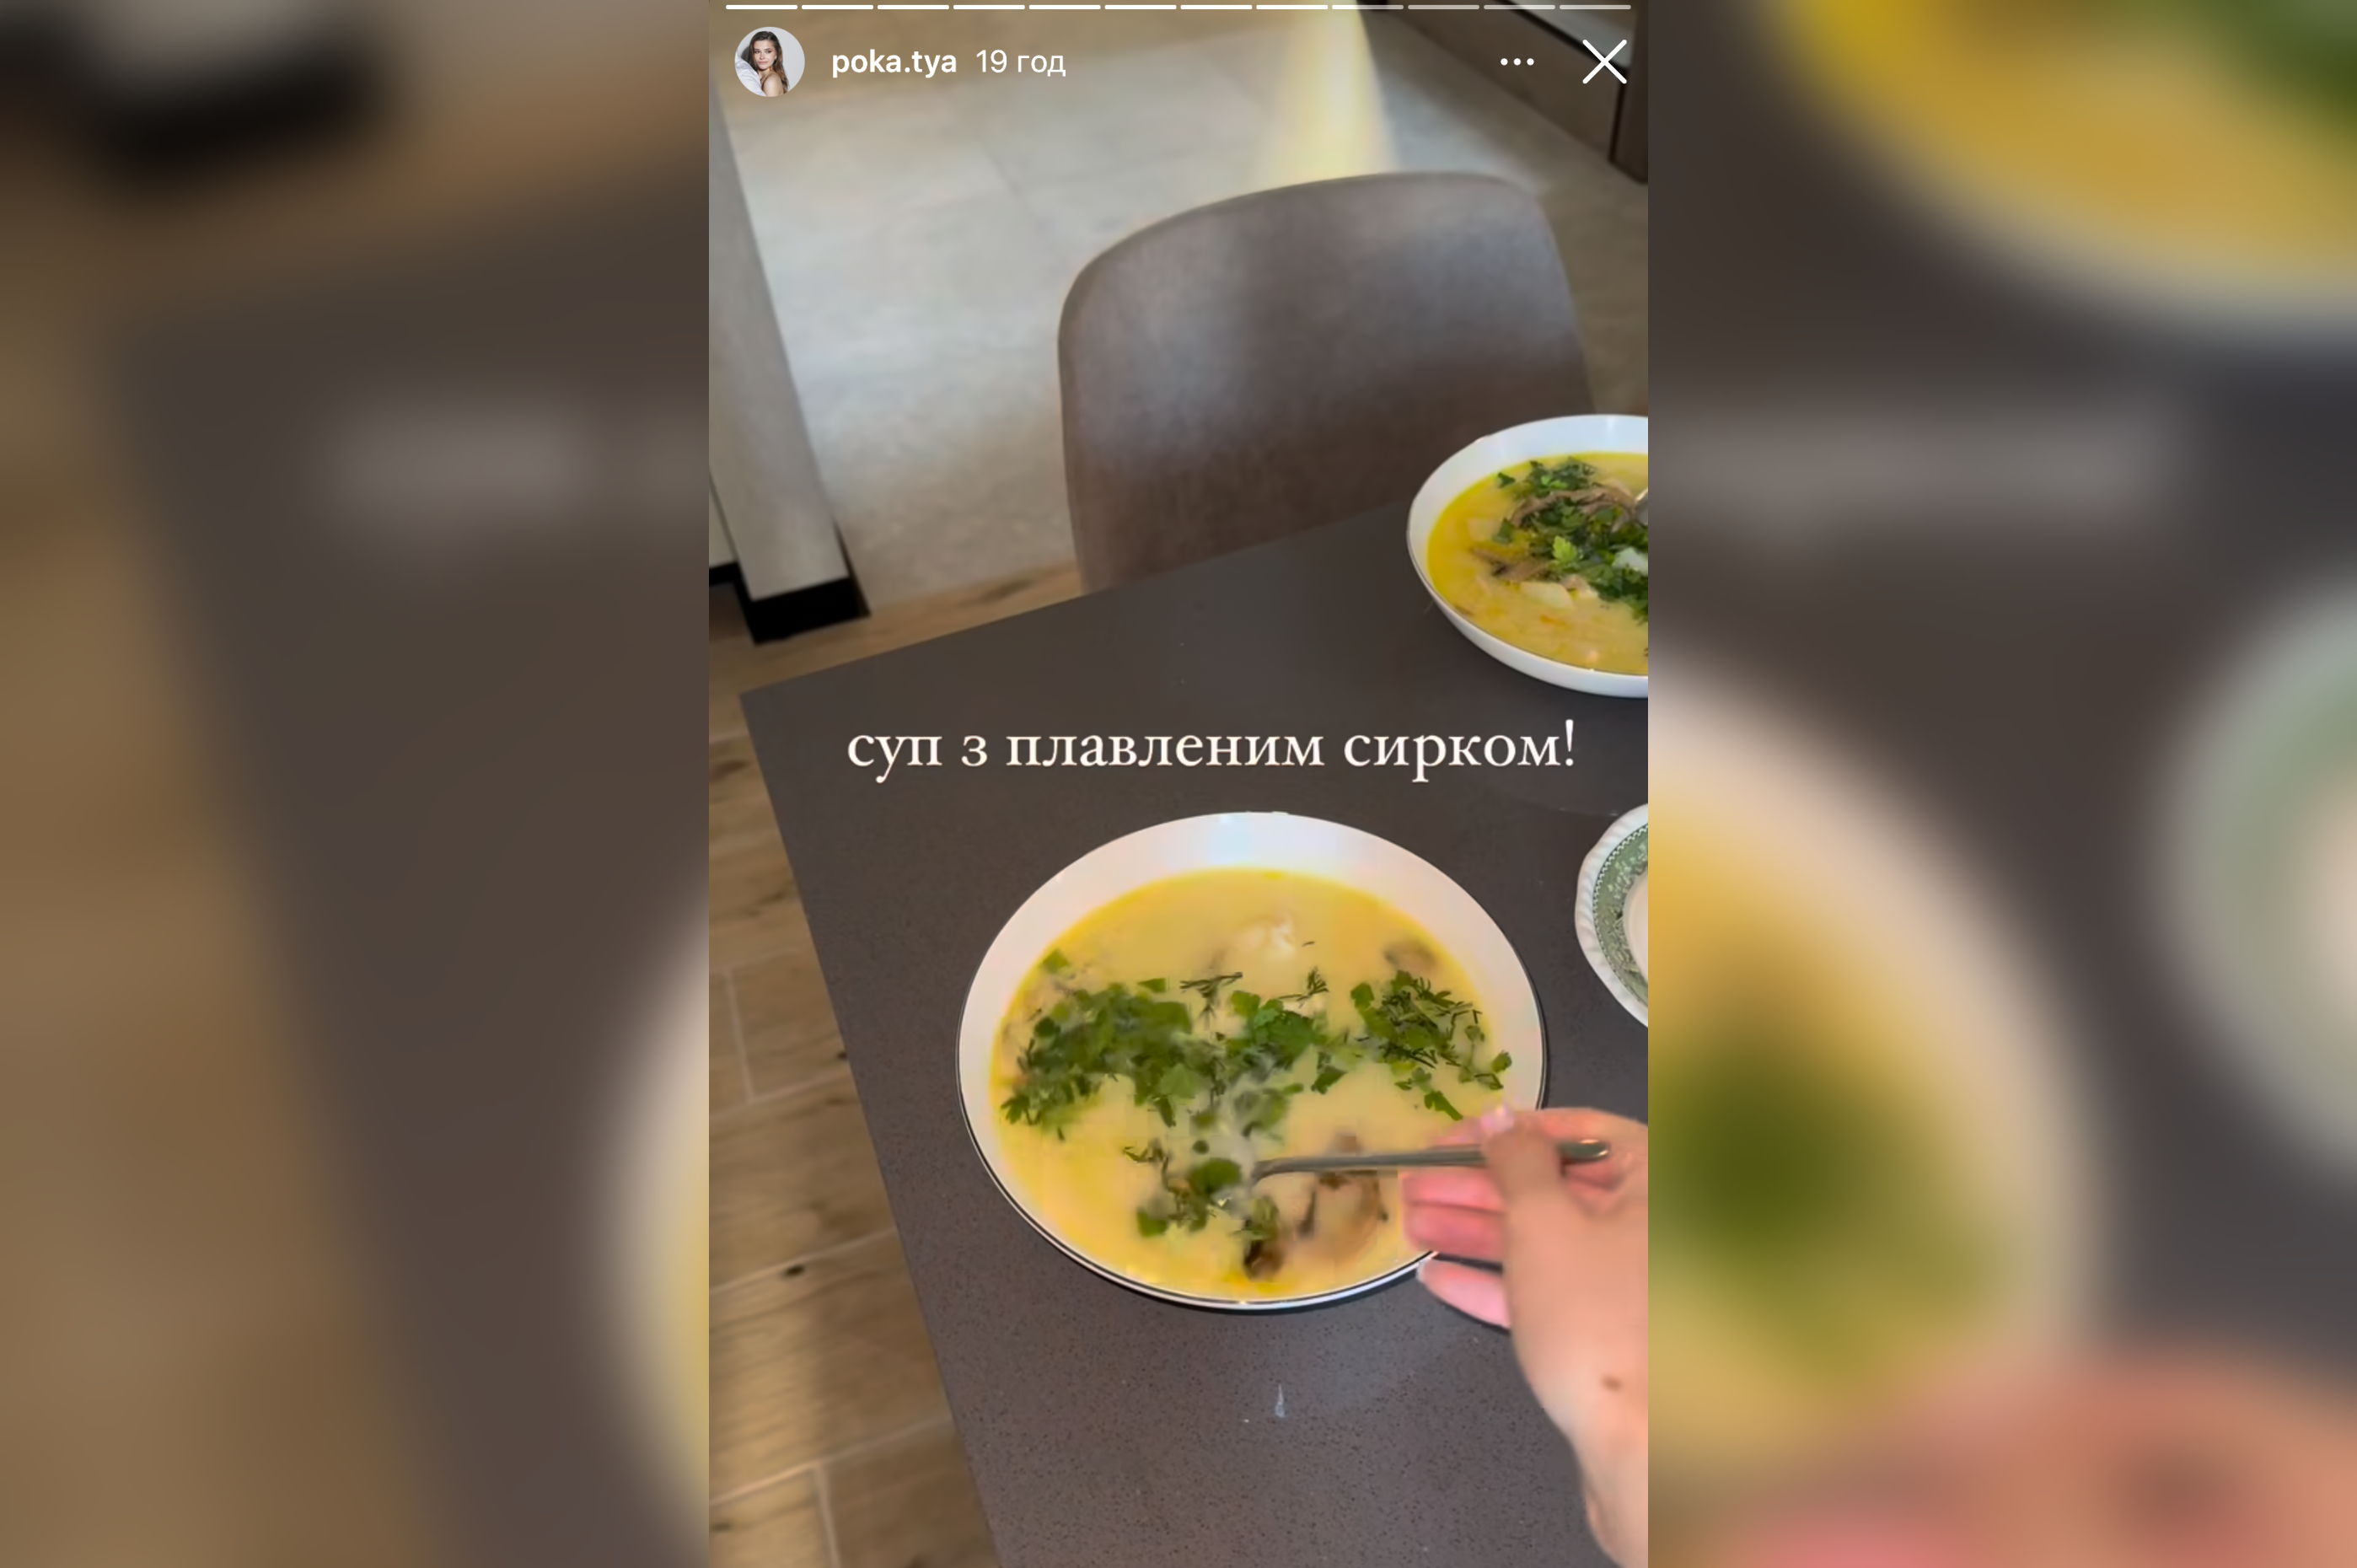 Молода дружина Володимира Остапчука поділилась рецептом супу з плавленим сирком. Фото з Instagram @poka.tya